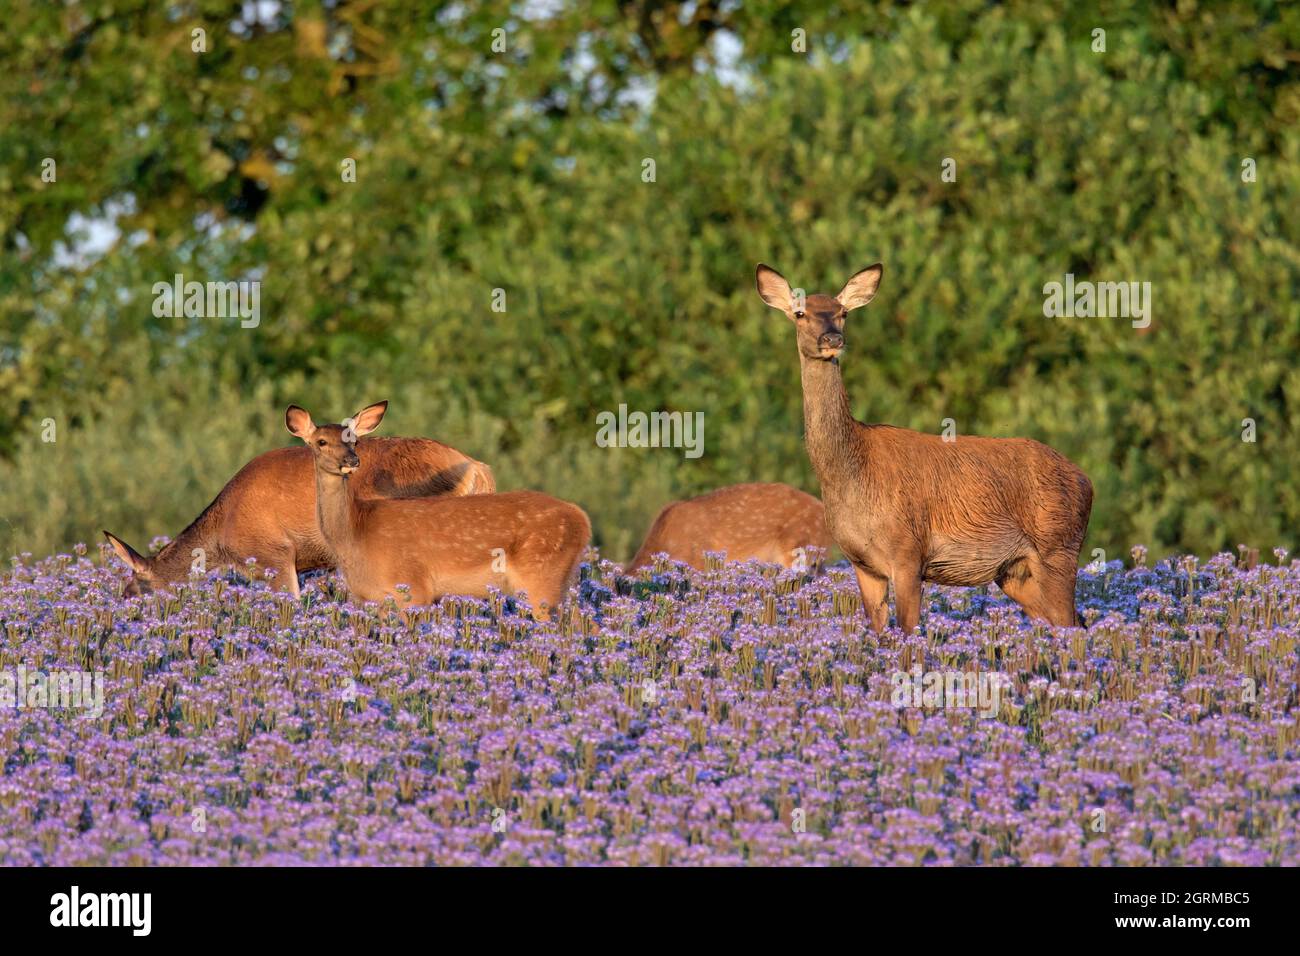 Cervo rosso (Cervus elaphus) si avea con vitelli che foraggiano in campo con lacca phacelia / blu Tansy / viola Tansy fioritura in estate Foto Stock